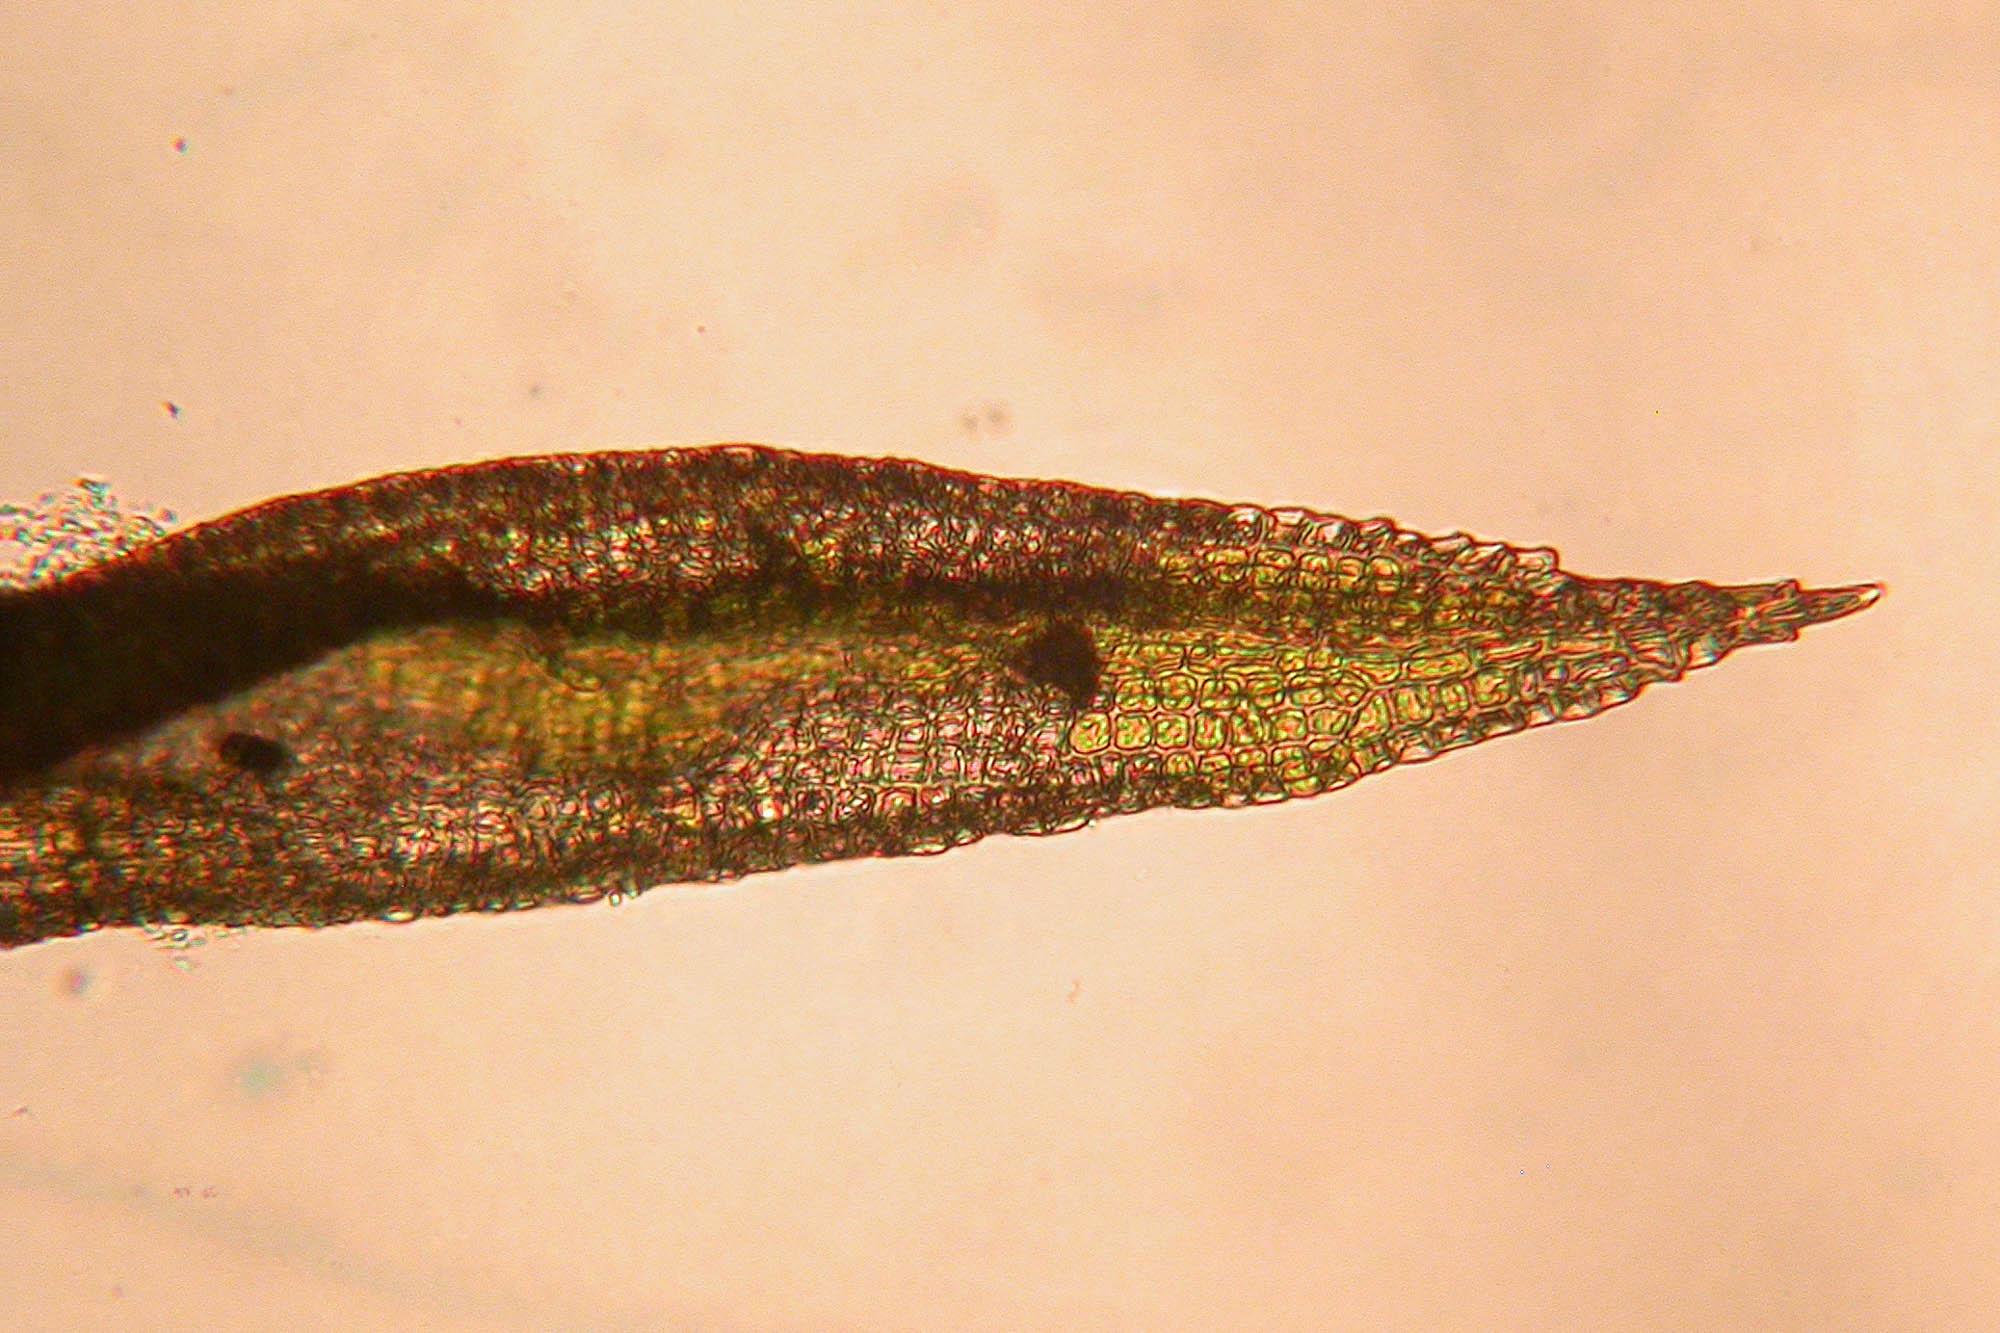 Ceratodon-purpureus-111.jpg